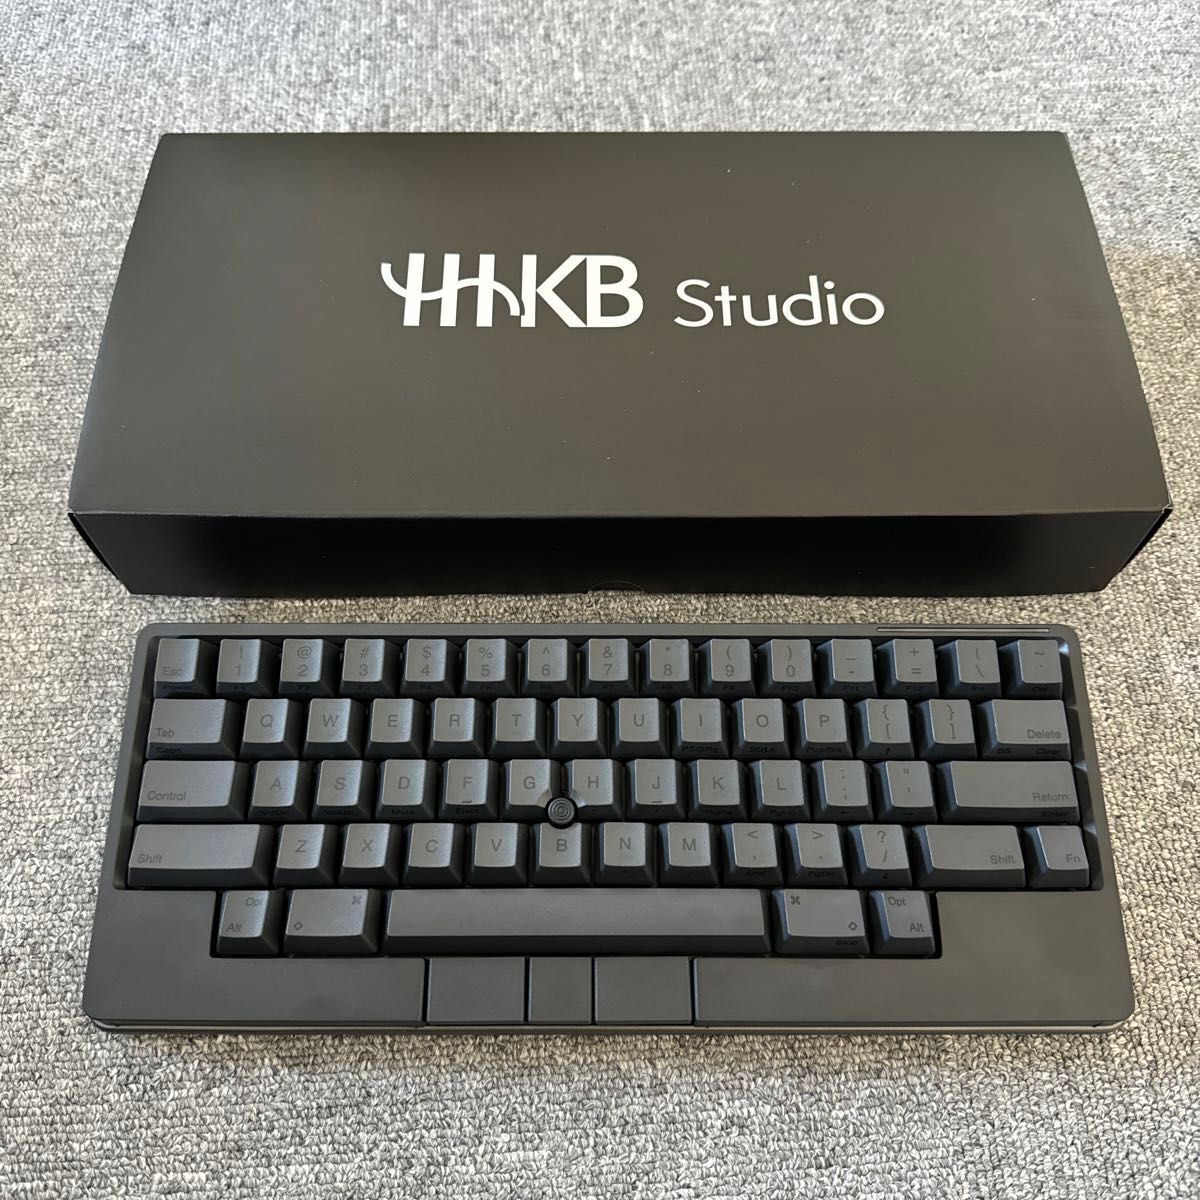 PFU PD-ID100B HHKB Studio Keyboard Pointing Stick Bluetooth USB Type-C Black